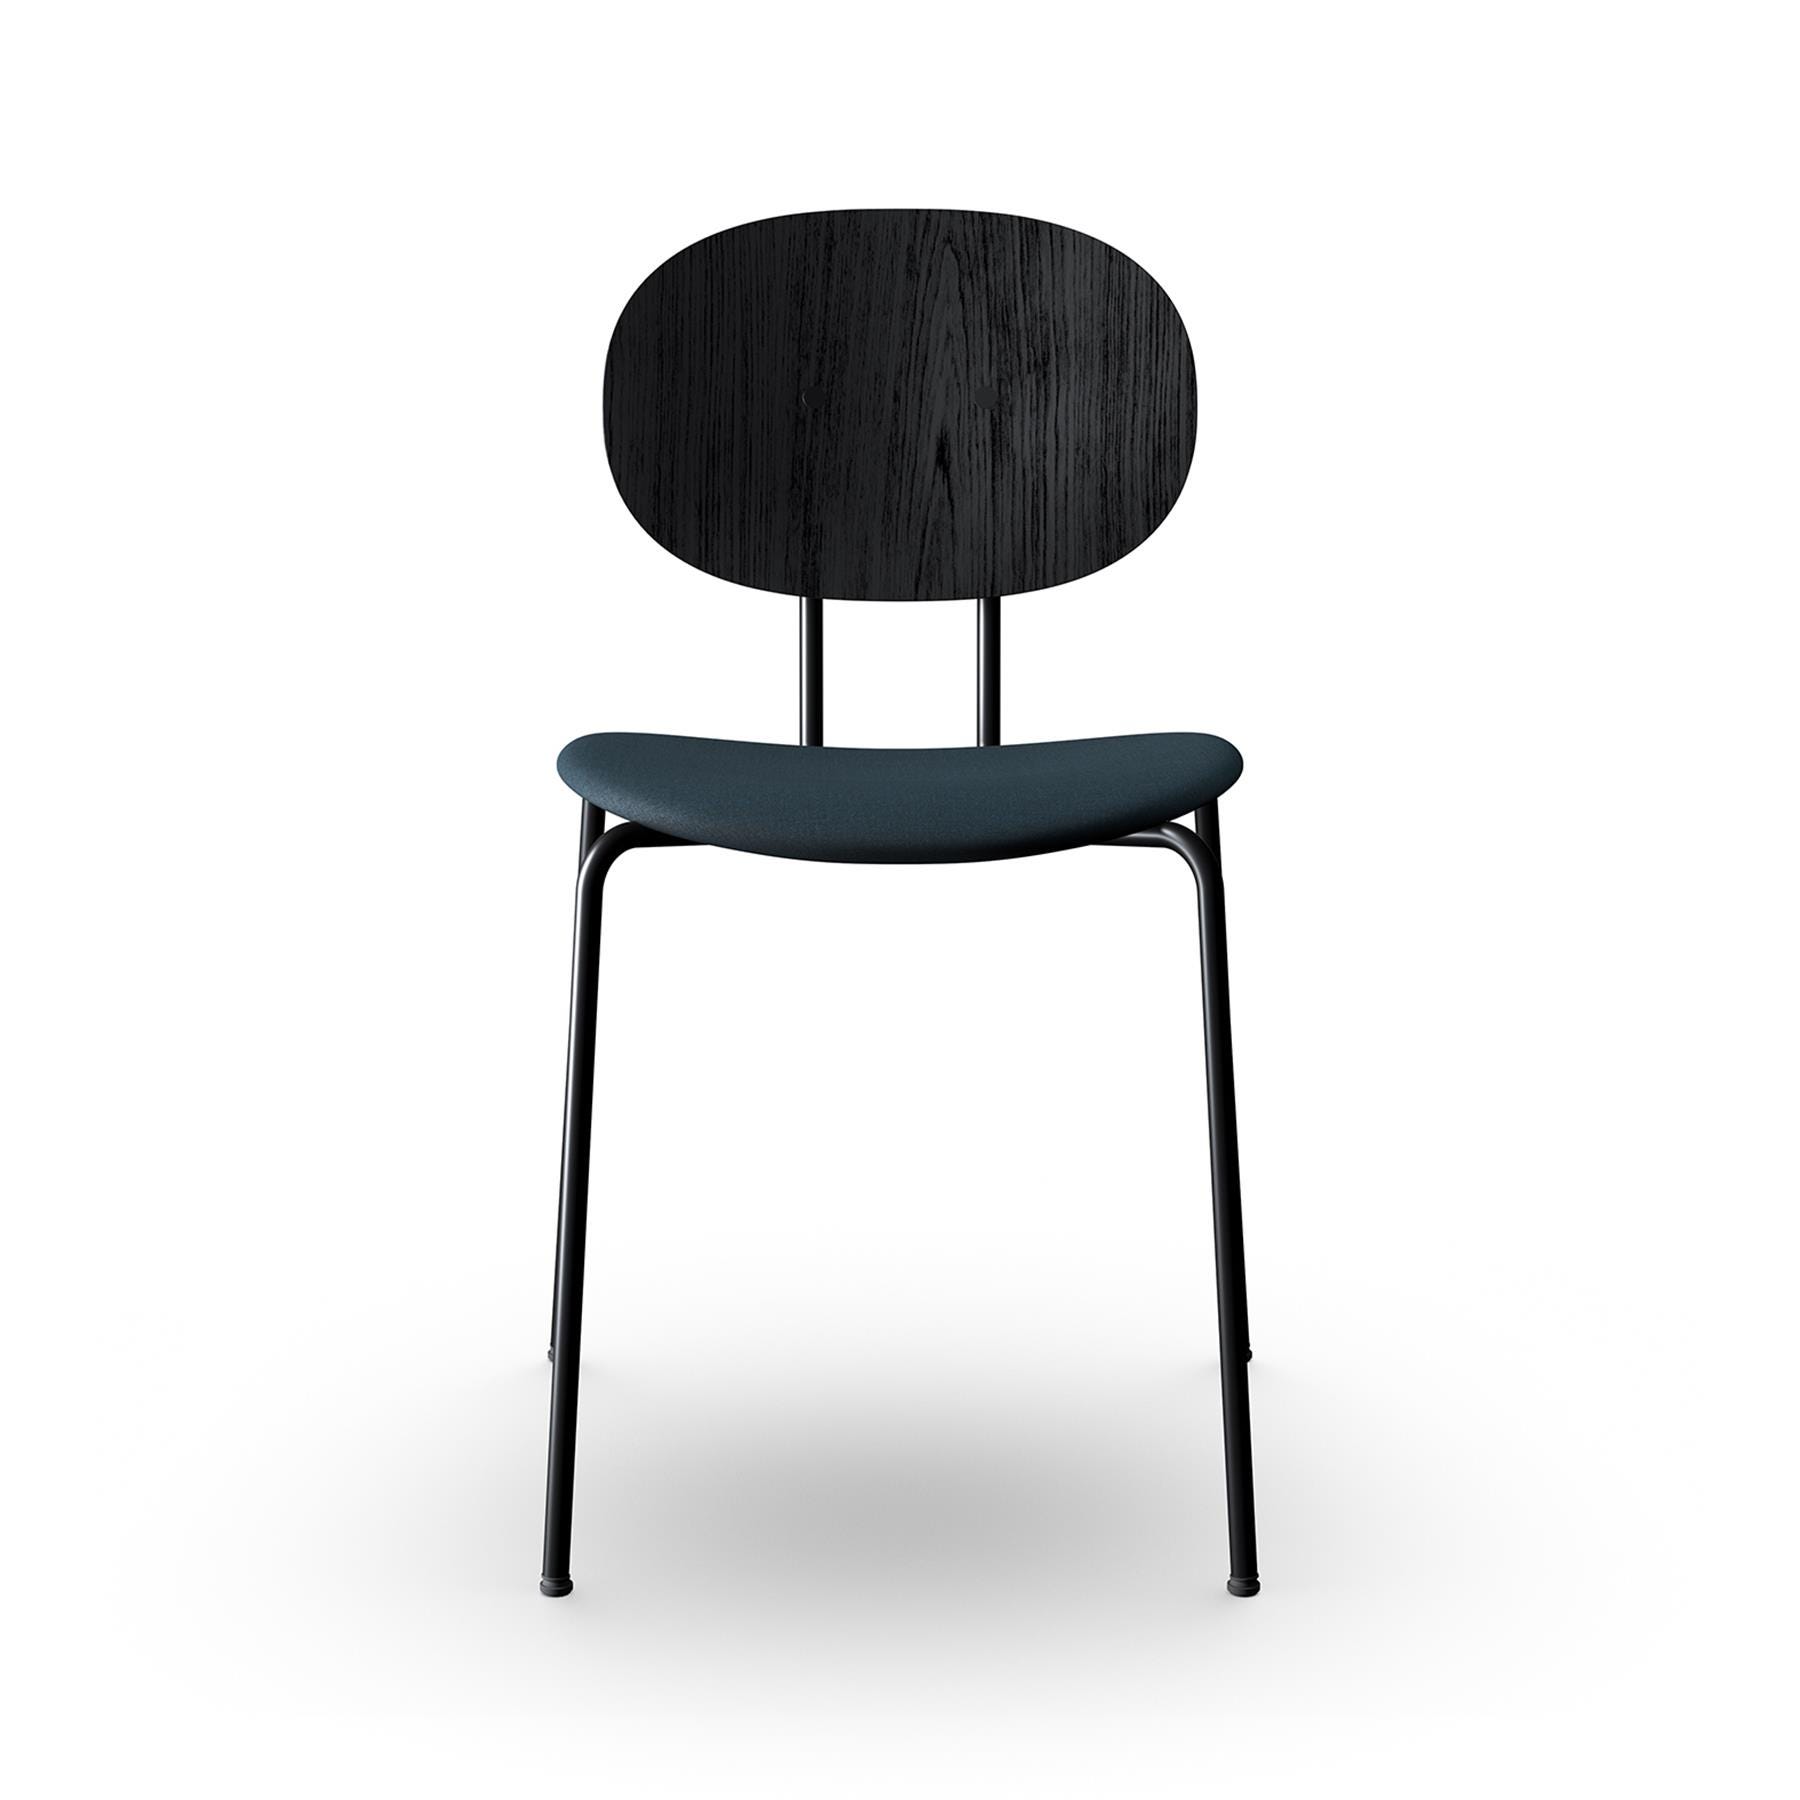 Sibast Piet Hein Dining Chair Black Steel Black Oak Remix 873 Designer Furniture From Holloways Of Ludlow